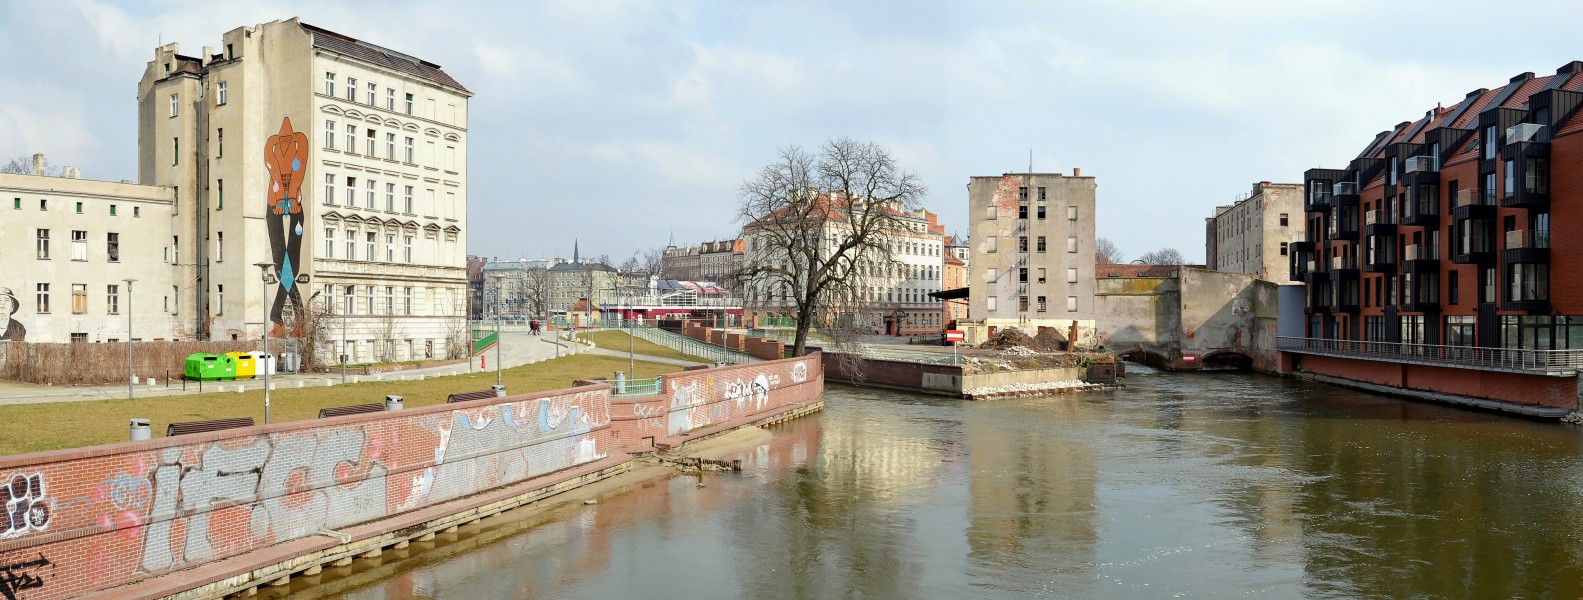 Wrocław (Breslau) - view from Kładka Piaskowa